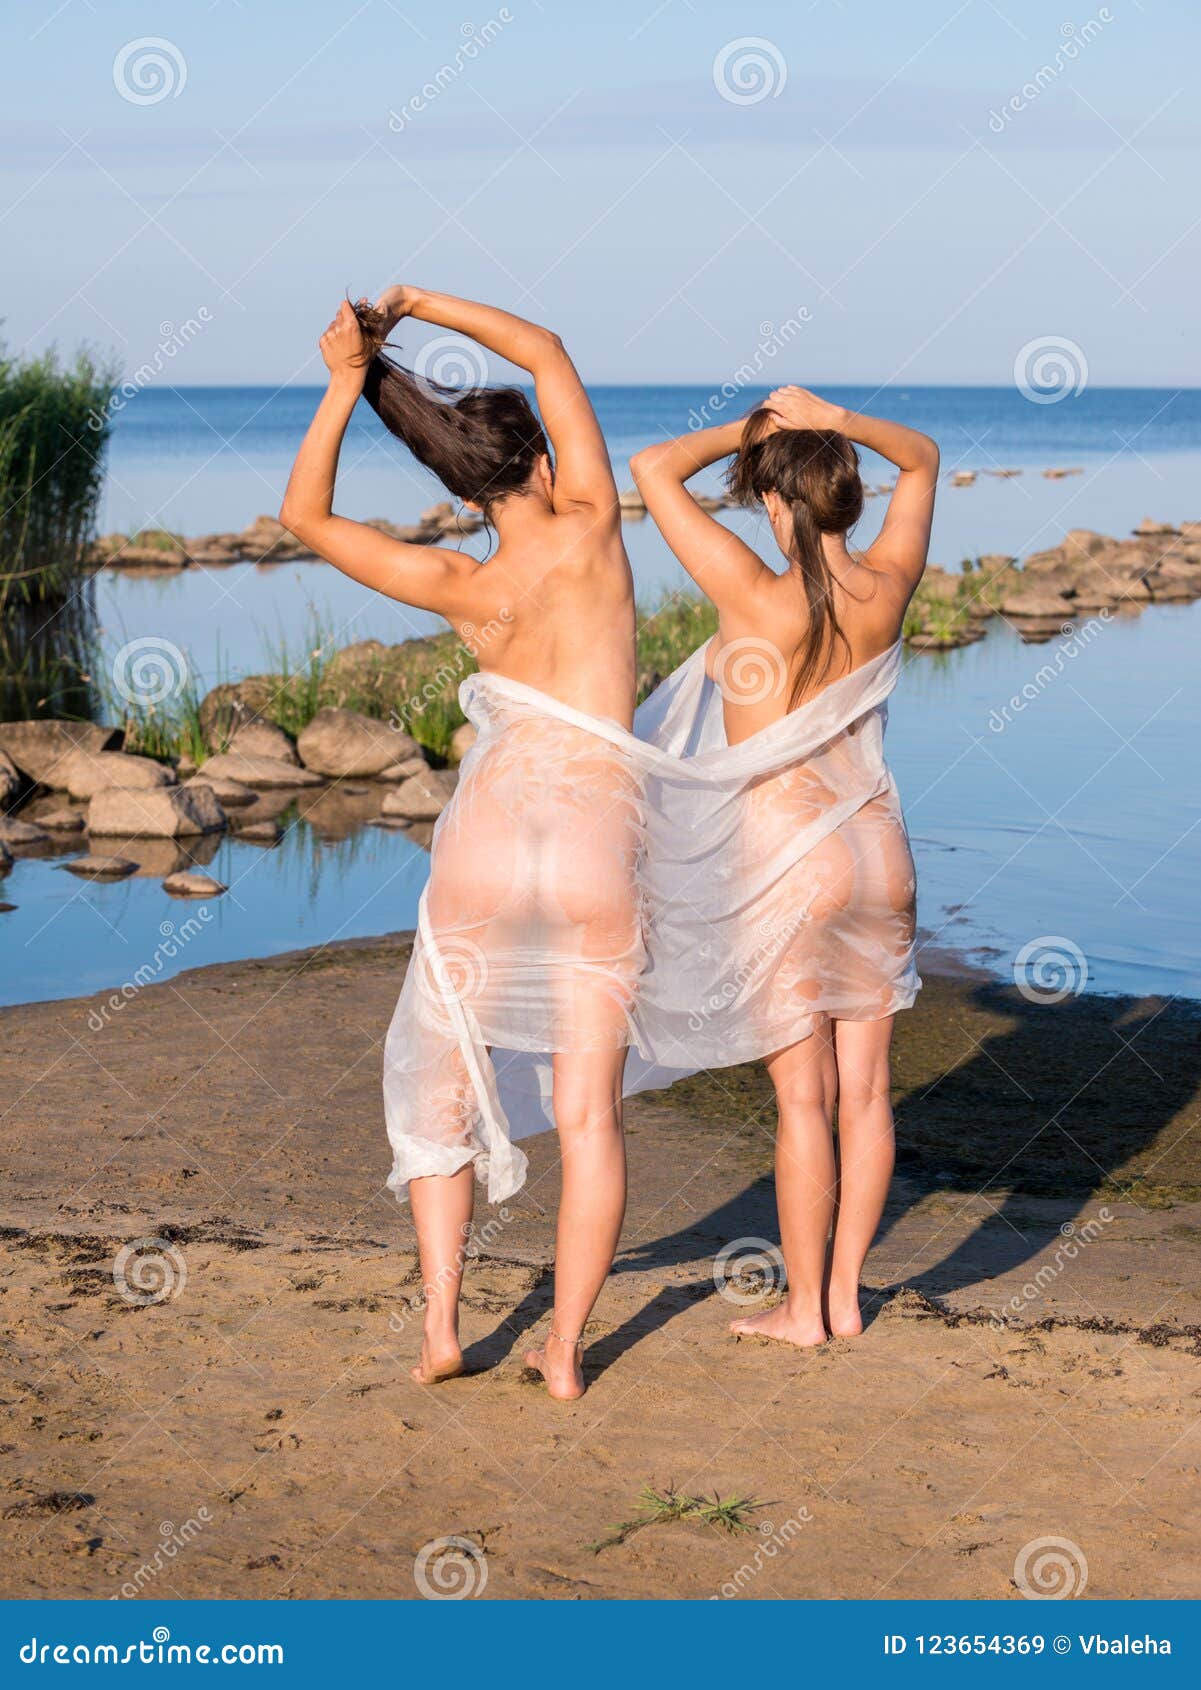 Nude women in beach